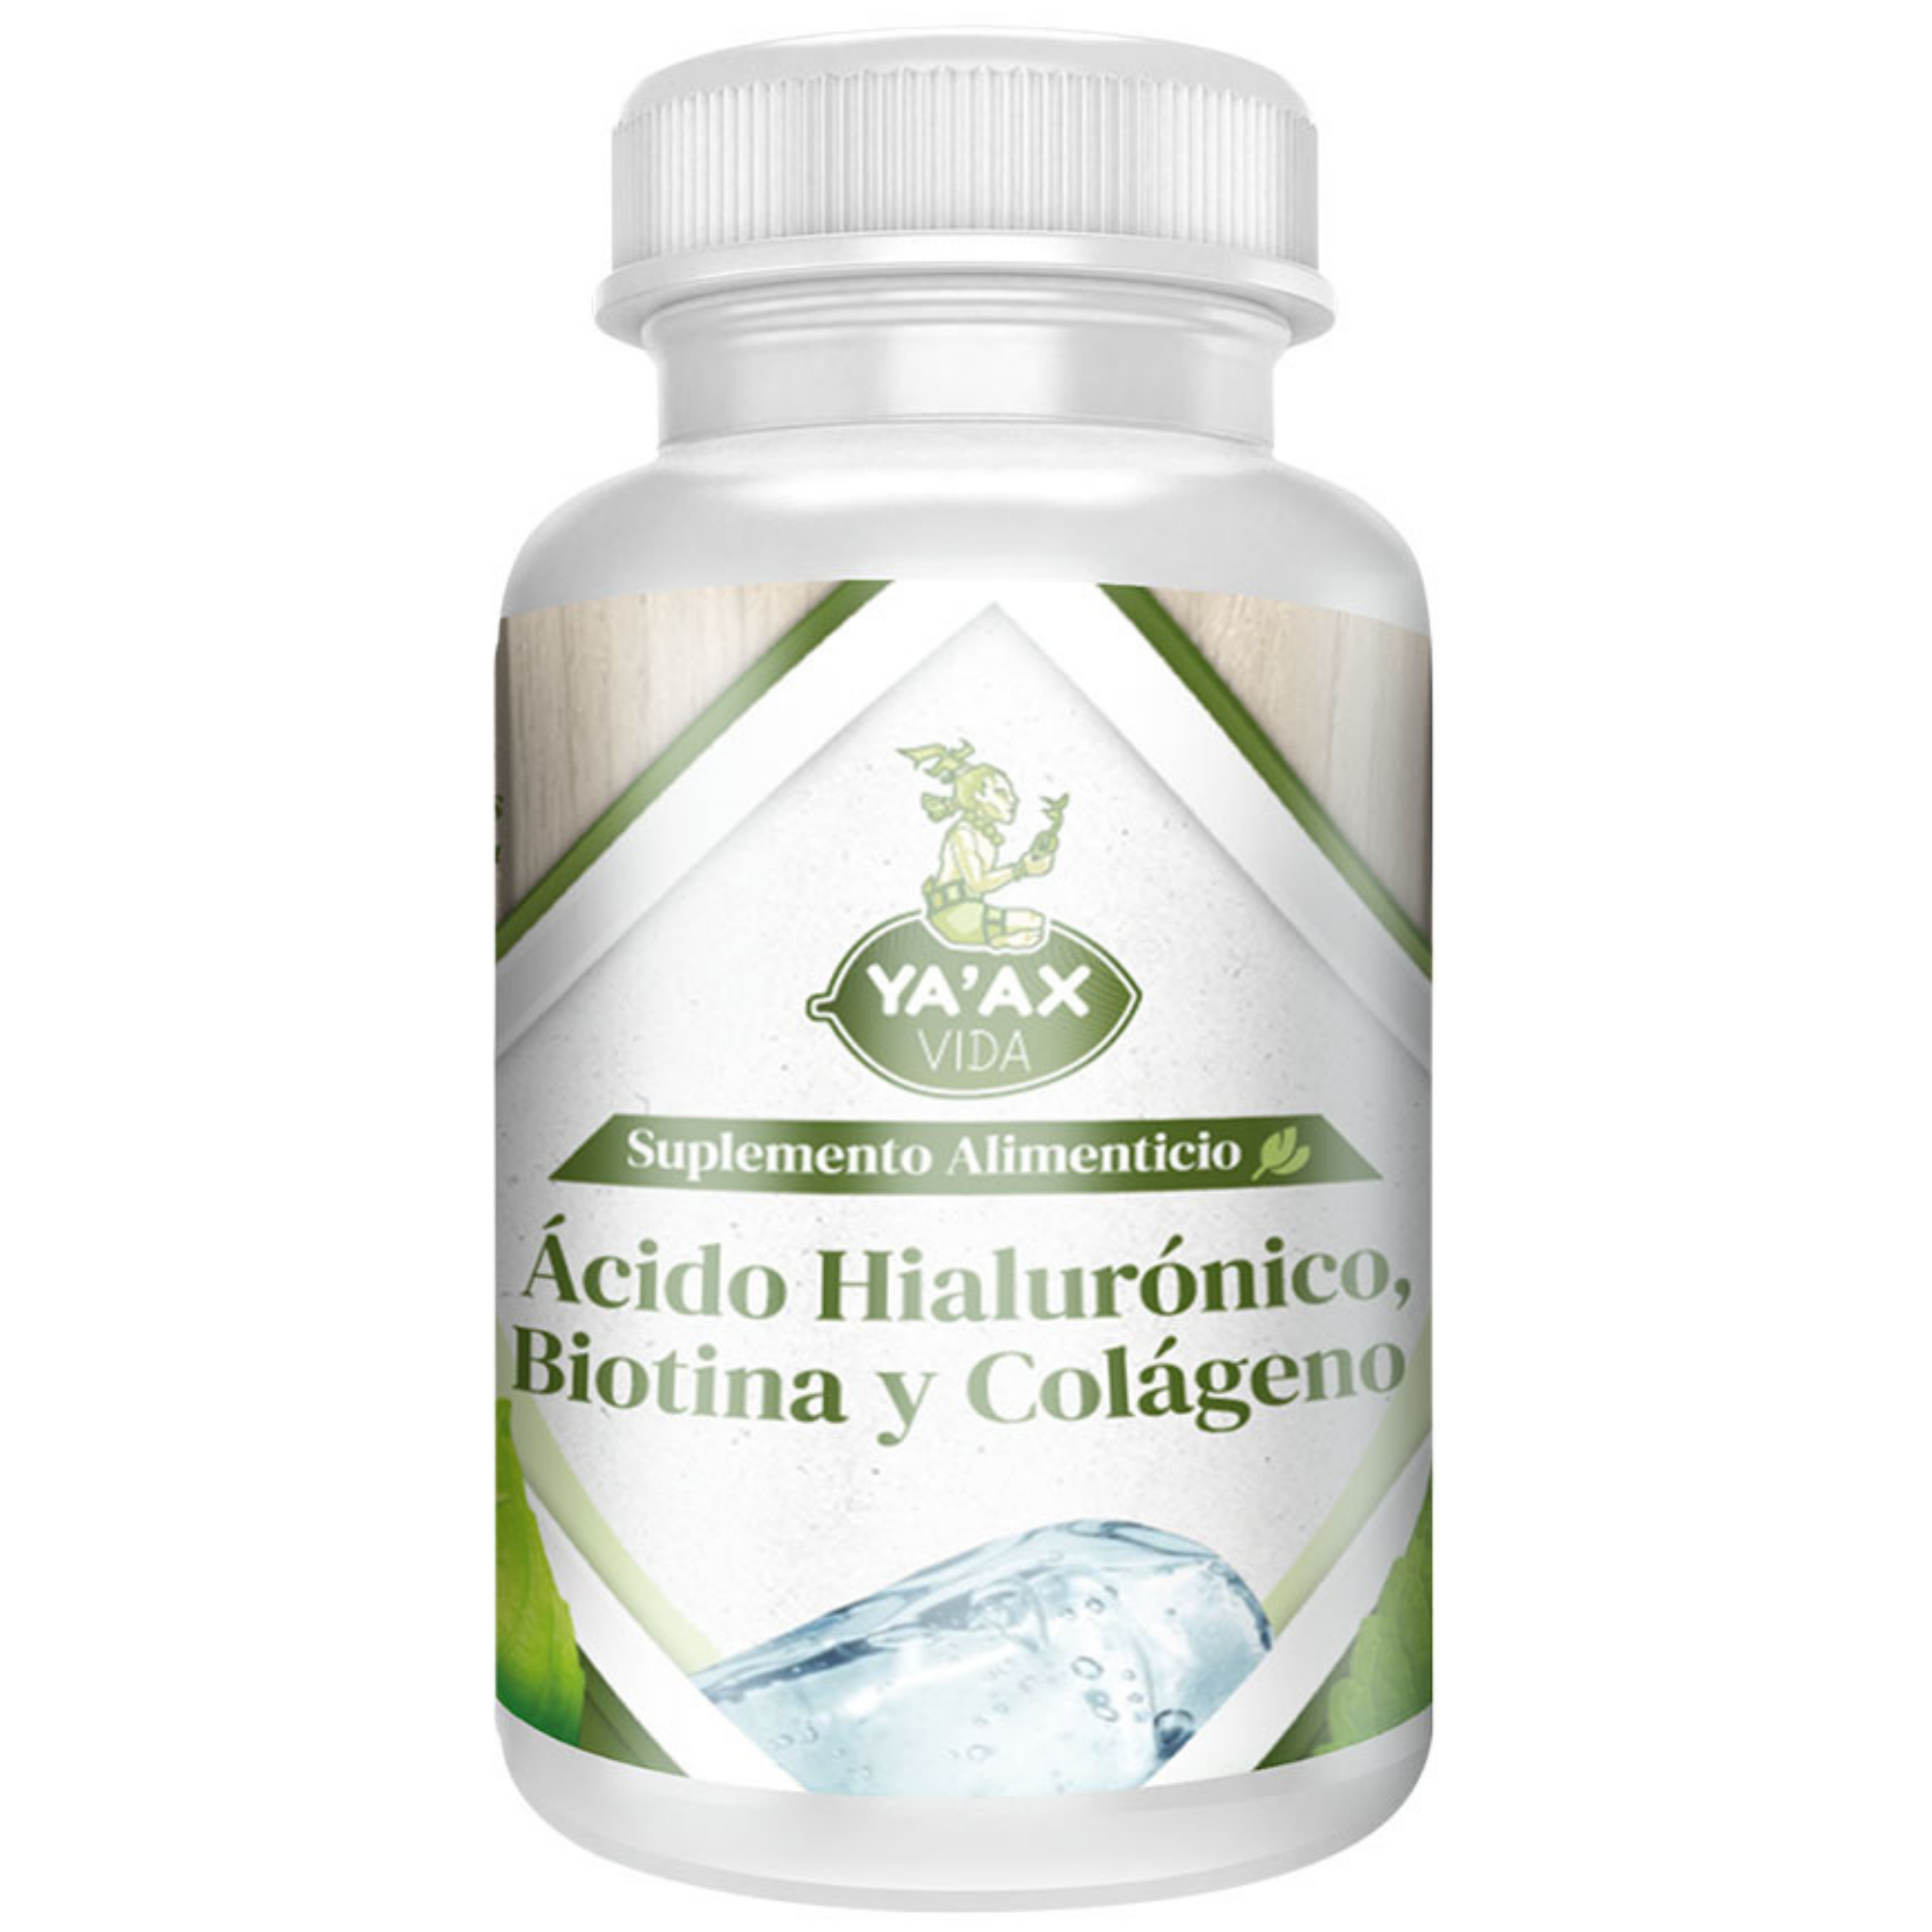 Ácido Hialurónico Biotina Y Colágeno 90 Capsulas 500 Mg Ya'ax Vida